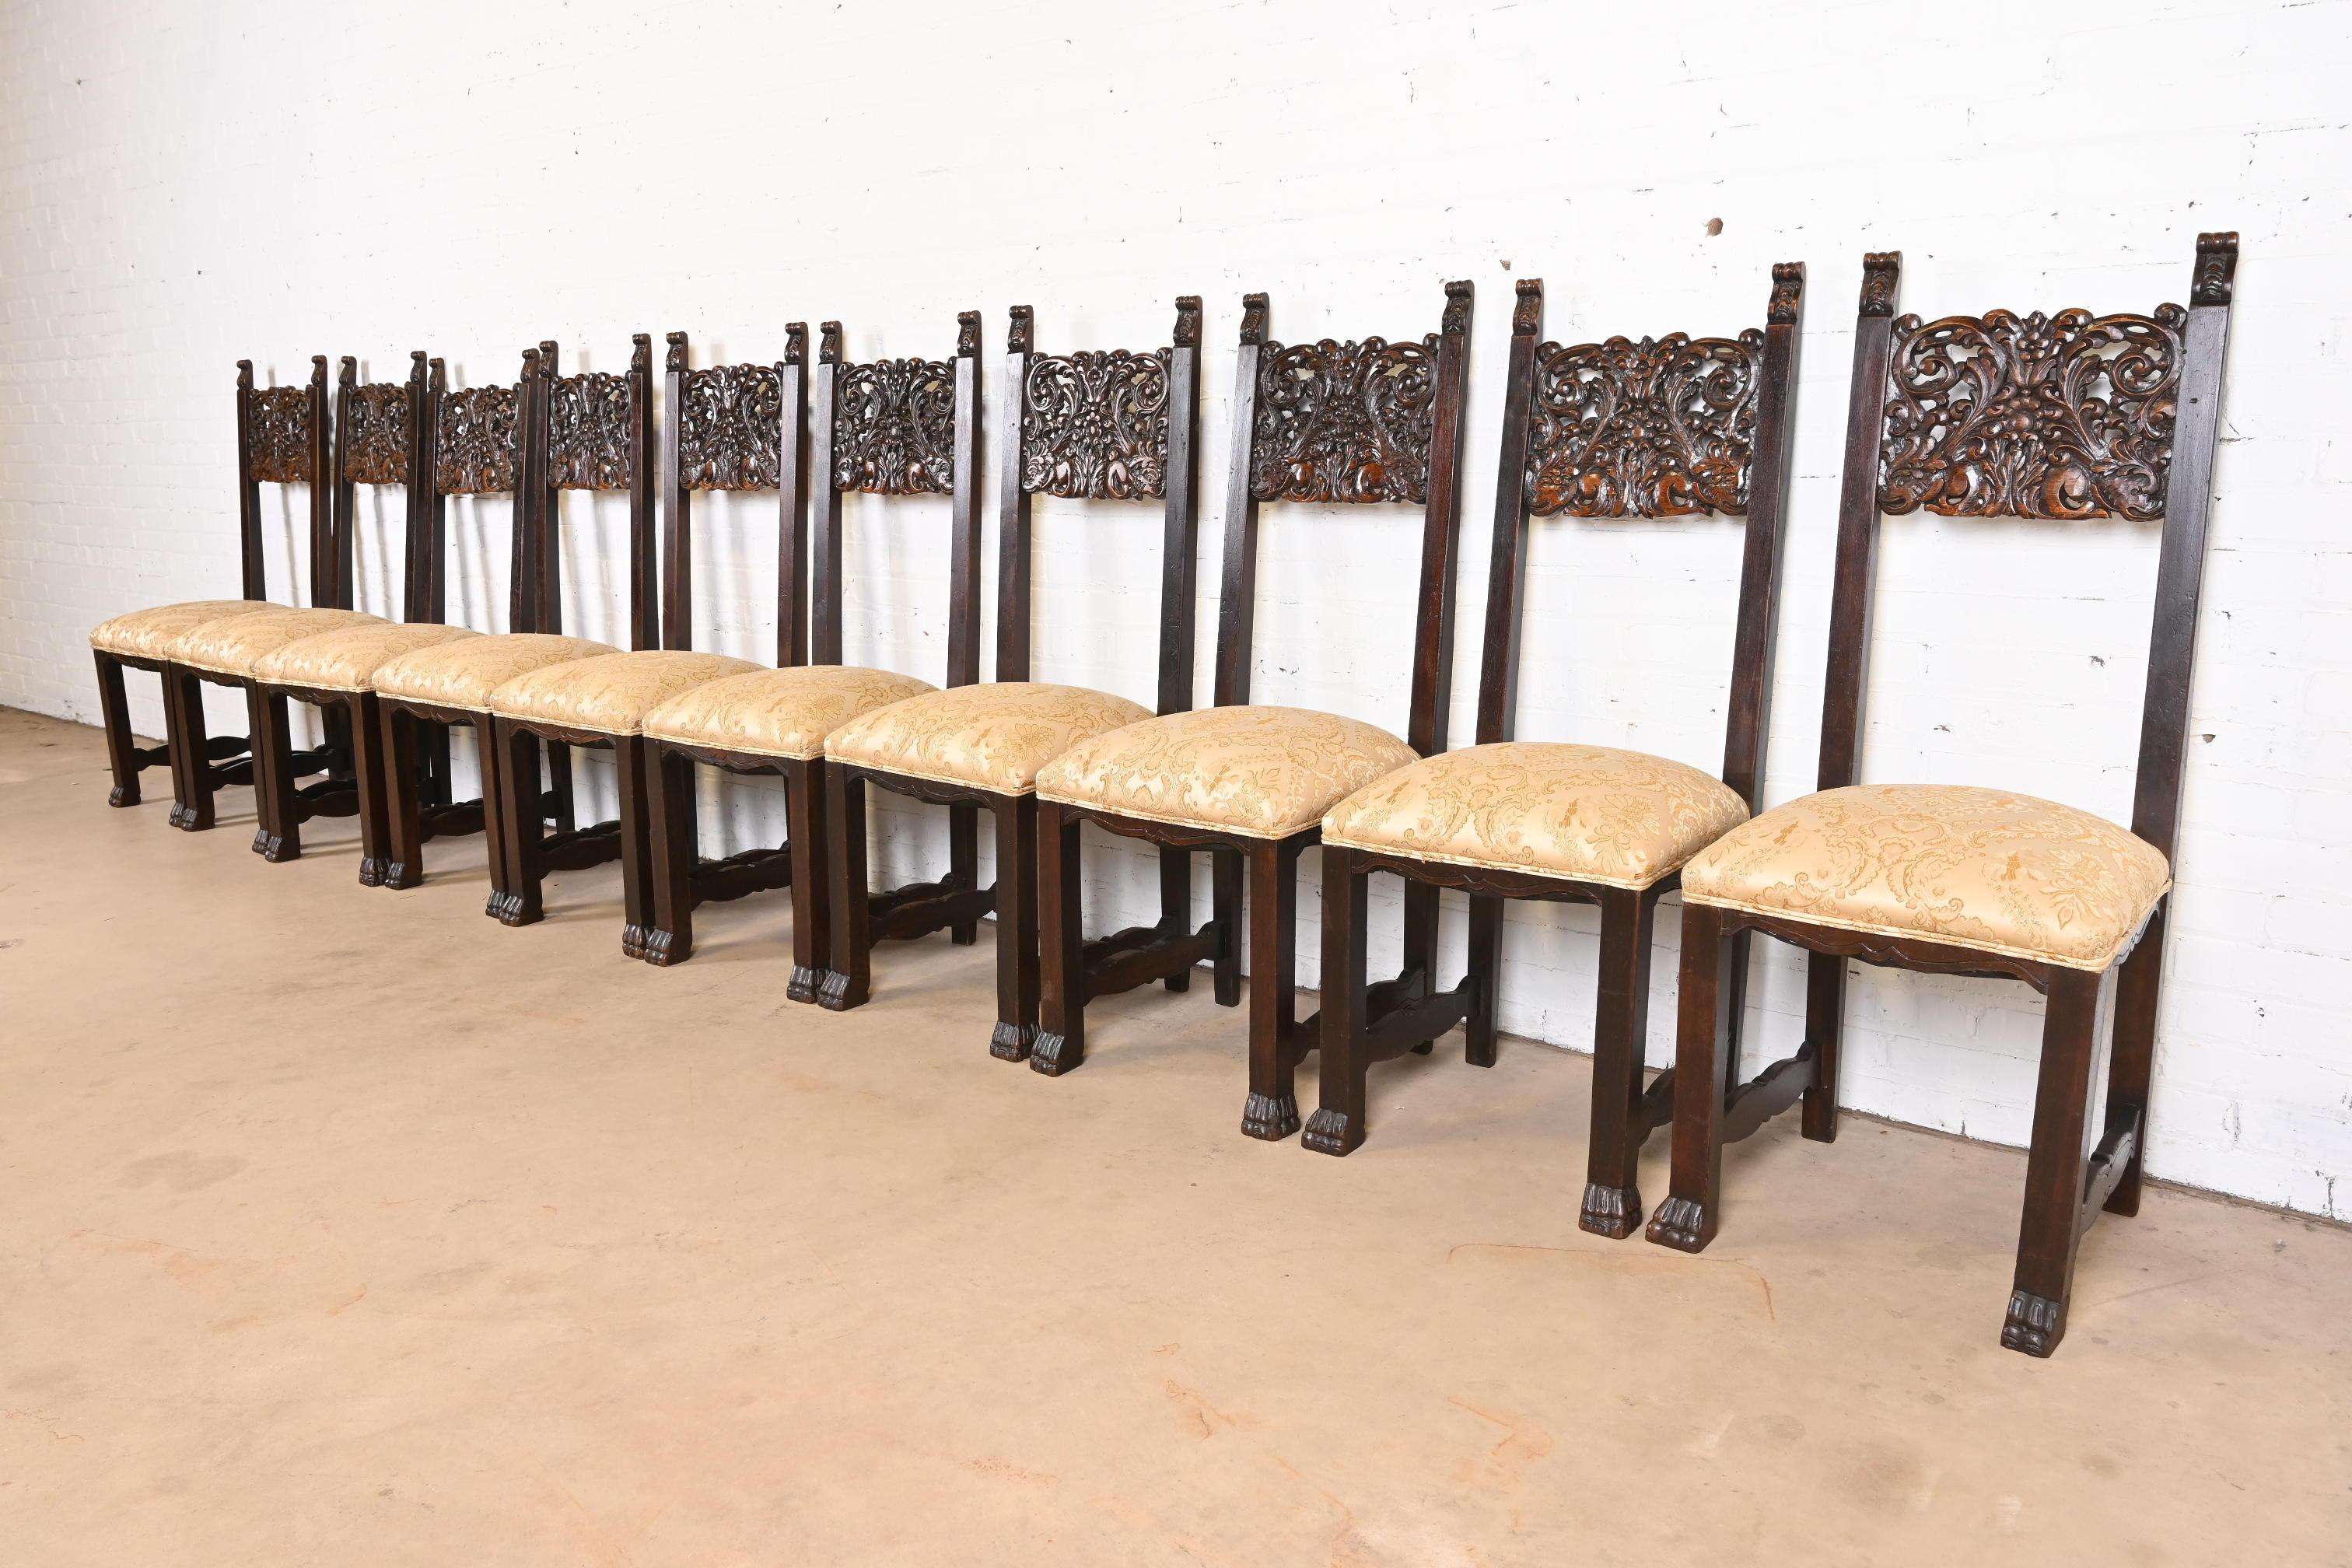 Exceptionnel ensemble de dix chaises de salle à manger à haut dossier de style victorien ou néo-Renaissance

Attribué à J.R. Horner & Co.

États-Unis, vers 1890

Chêne sculpté et orné, avec des sièges rembourrés et des pieds en patte